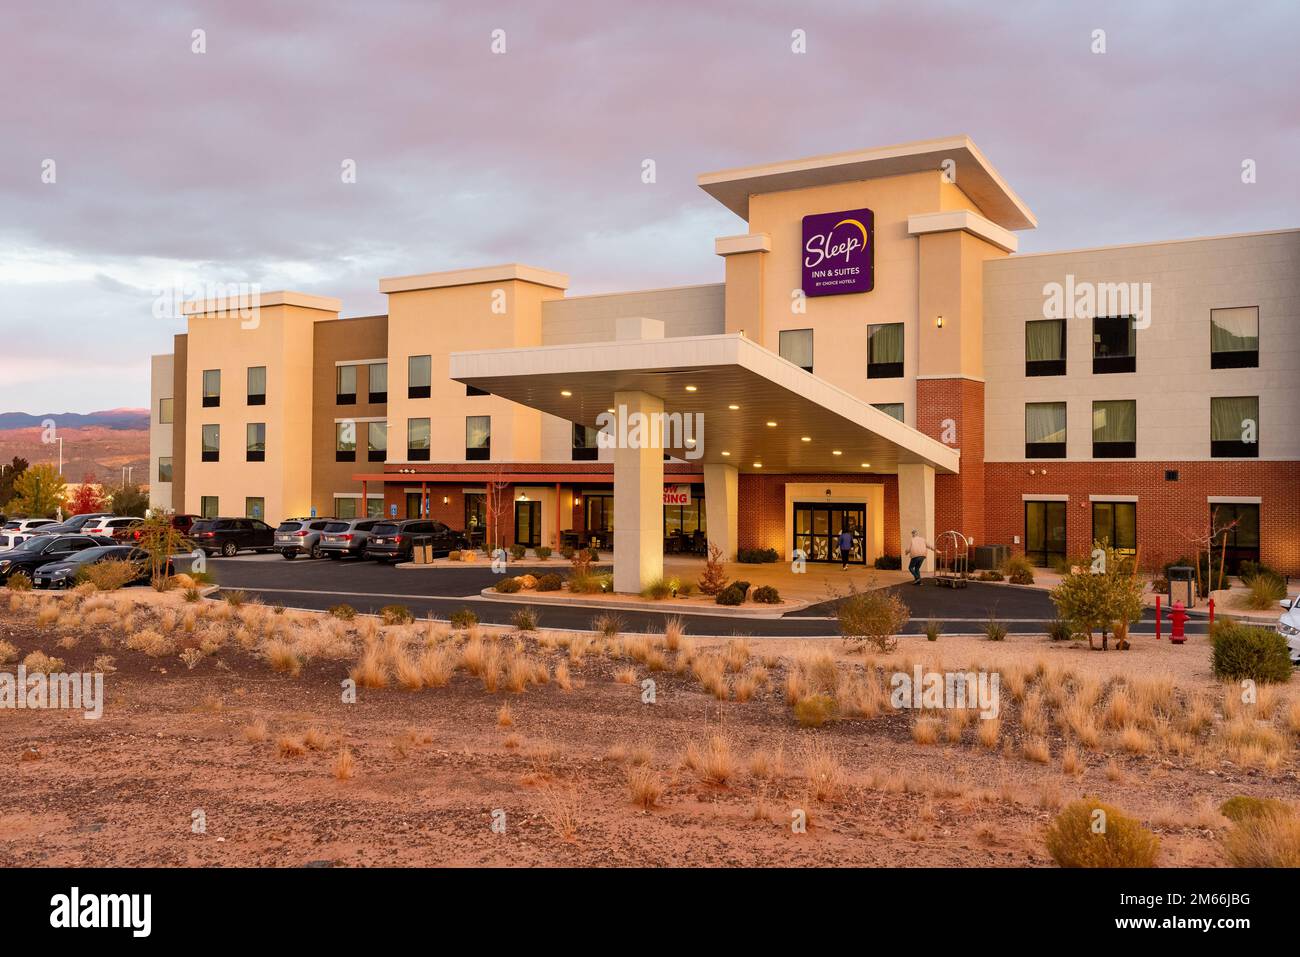 The Sleep Inn, a popular chain hotel, in Hurricane, Utah, United States. Stock Photo